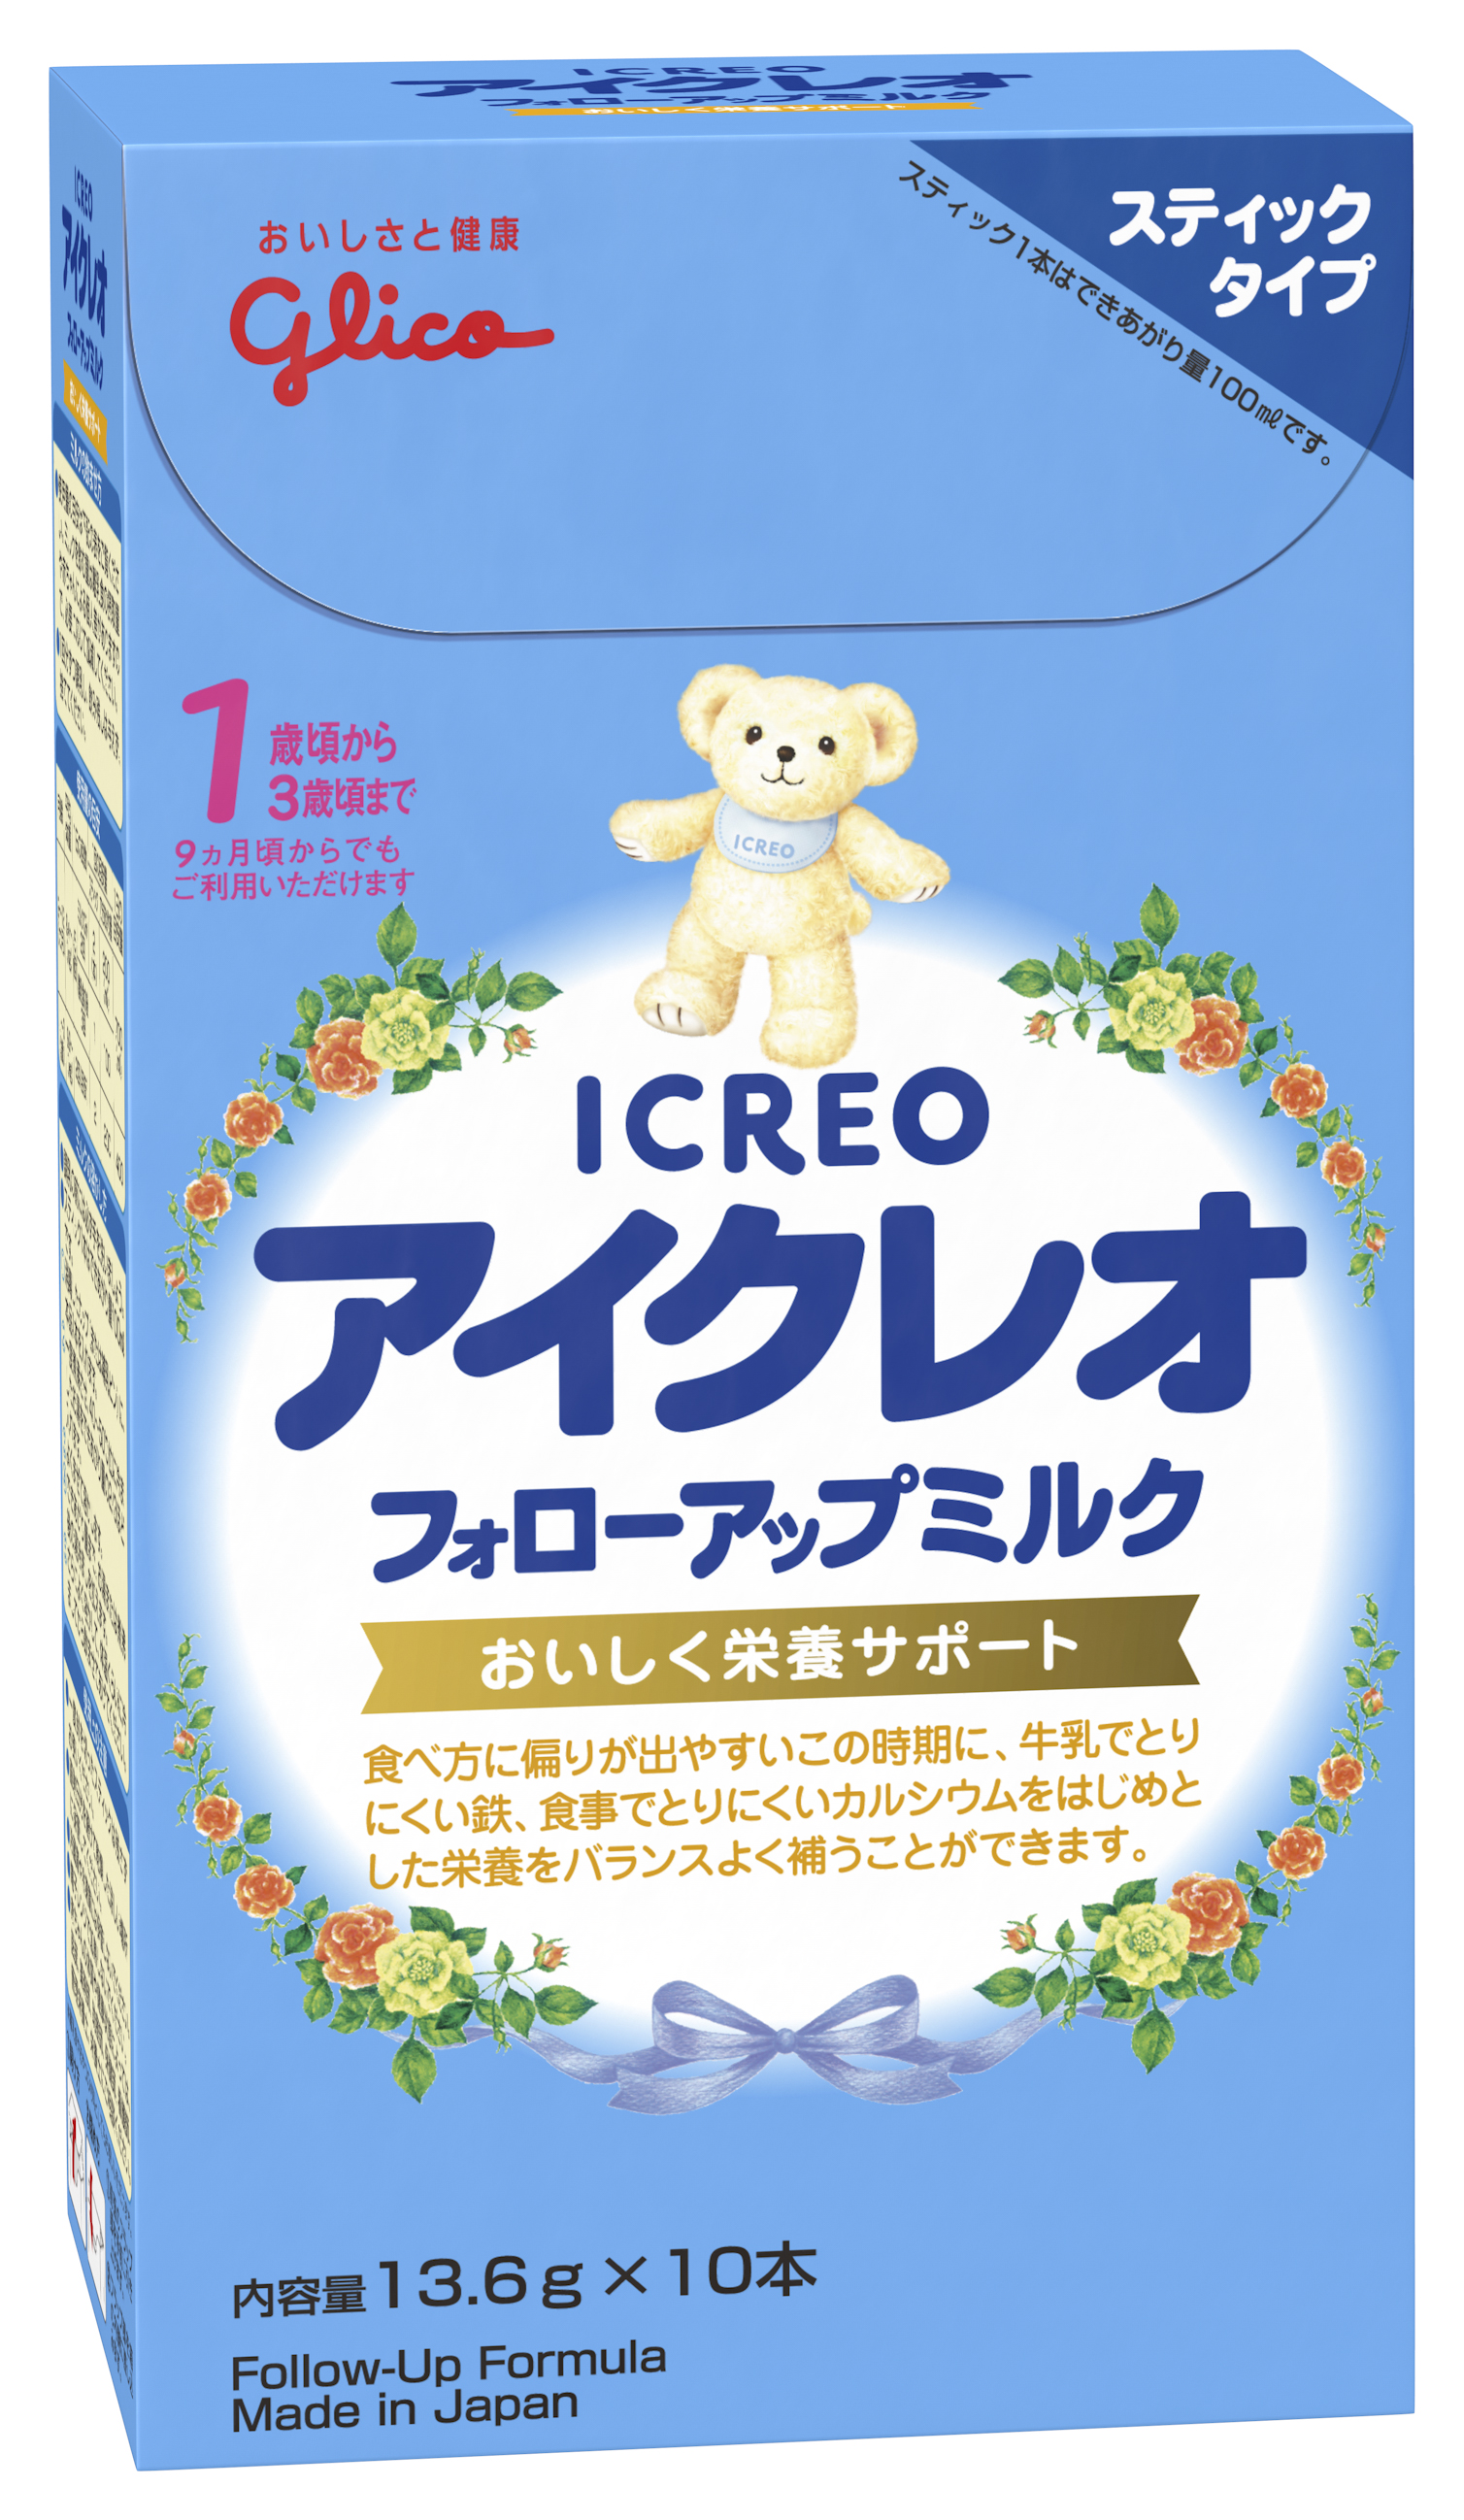 粉ミルク アイクレオ フォローアップミルク - 授乳/お食事用品